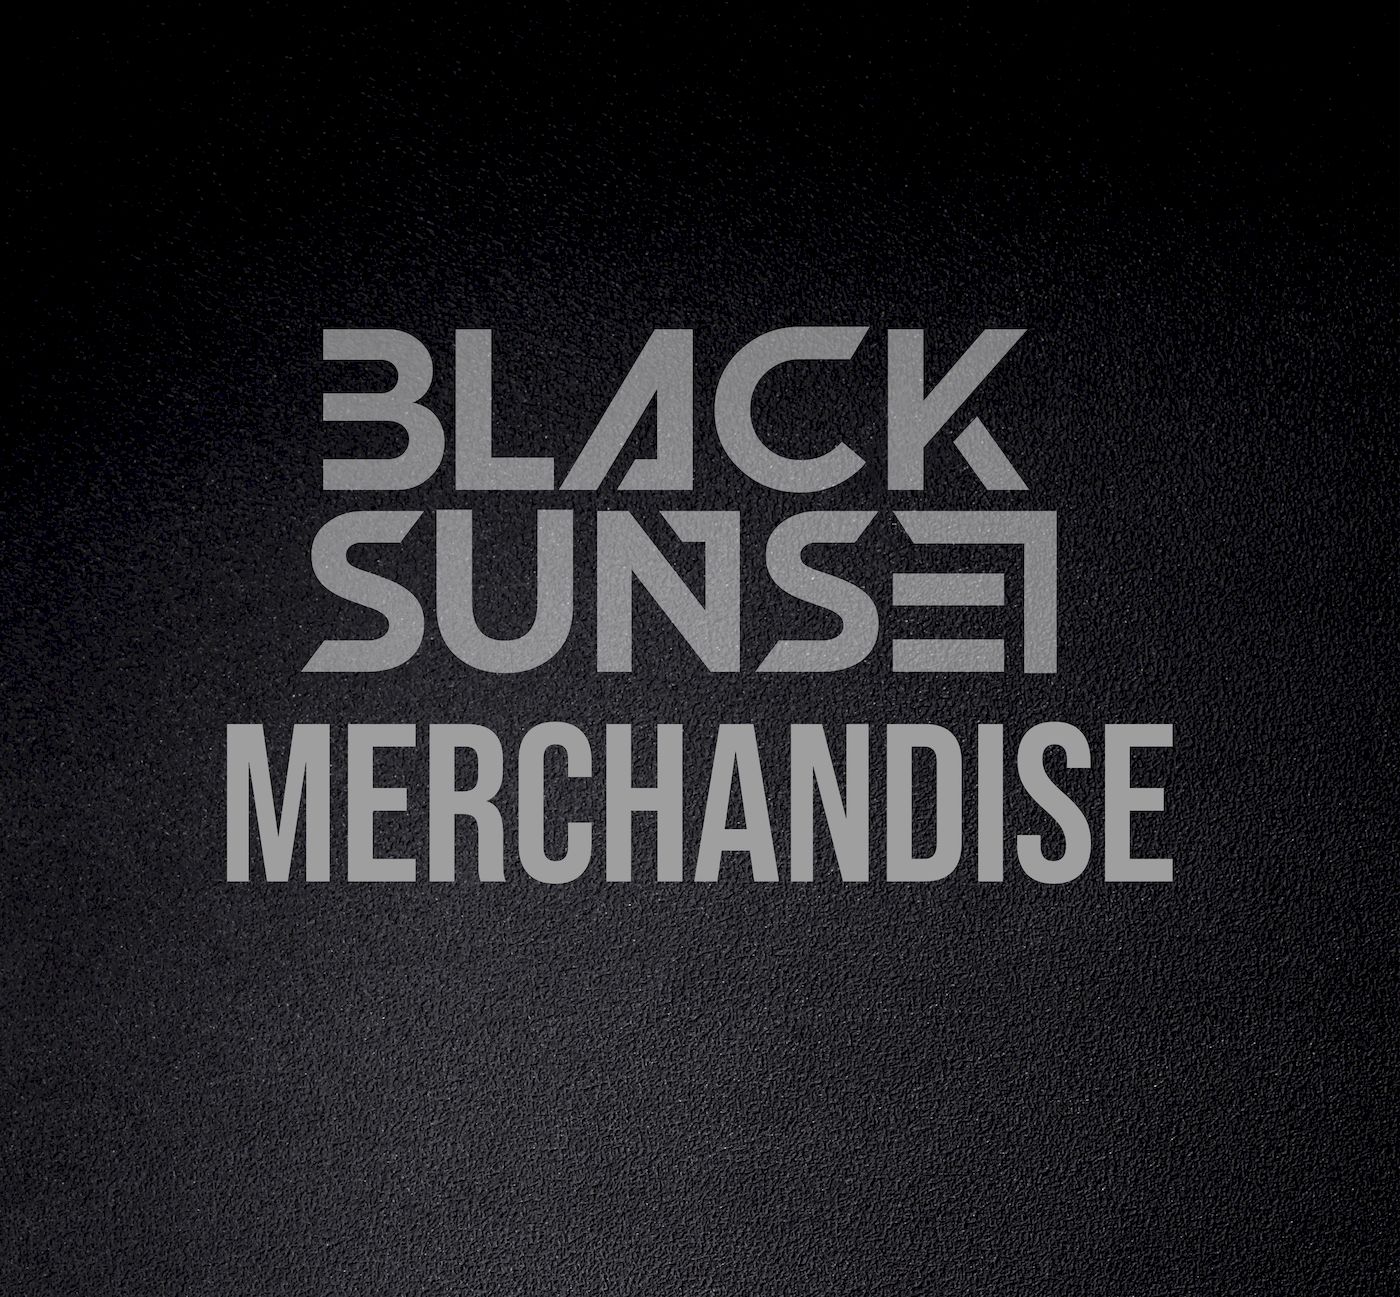 Blacksunset Merchandise - elegantne ja minimalistlik logo mustal taustal, peegeldades kõrgekvaliteedilist ja stiilset brändingut.